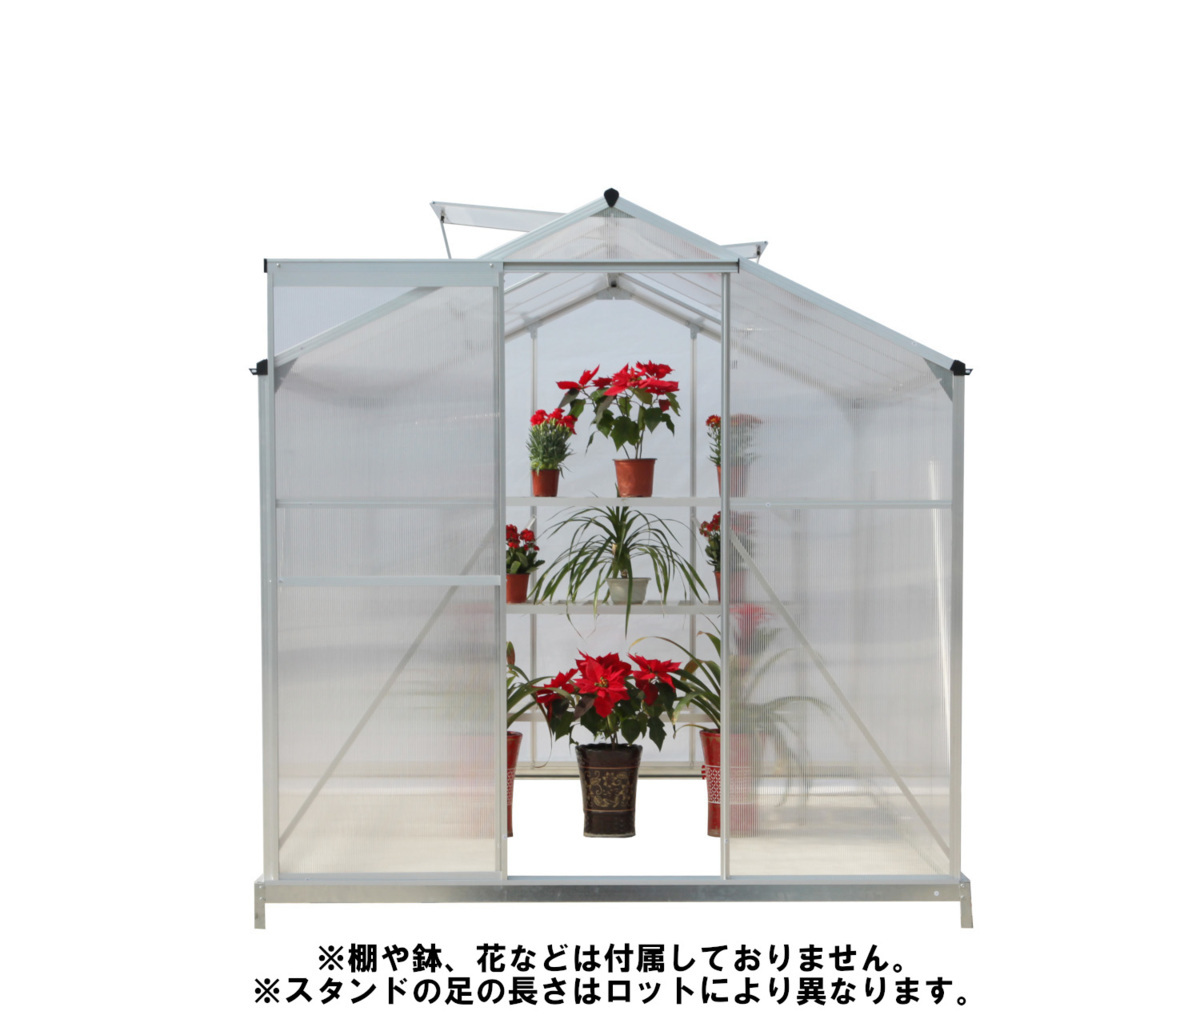 【即納】GRESS グリーンハウス 10x6フィート 中空ポリカーボネート アルミ 温室 ハウス ガーデニング 花 観葉植物 栽培